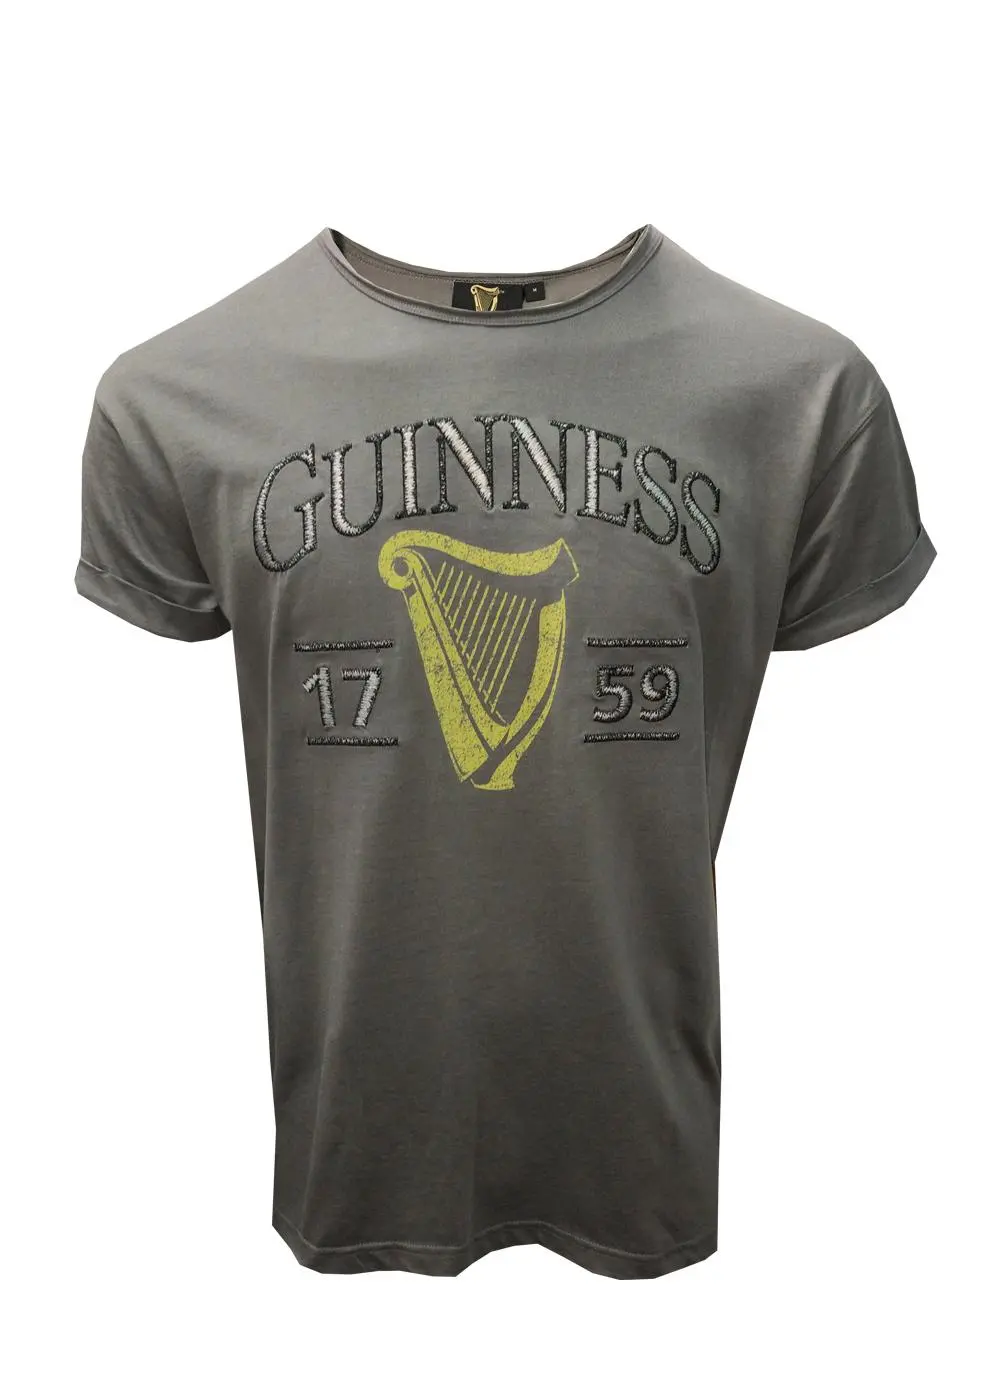 Guinness Harp 3D Effect T-Shirt | Blarney